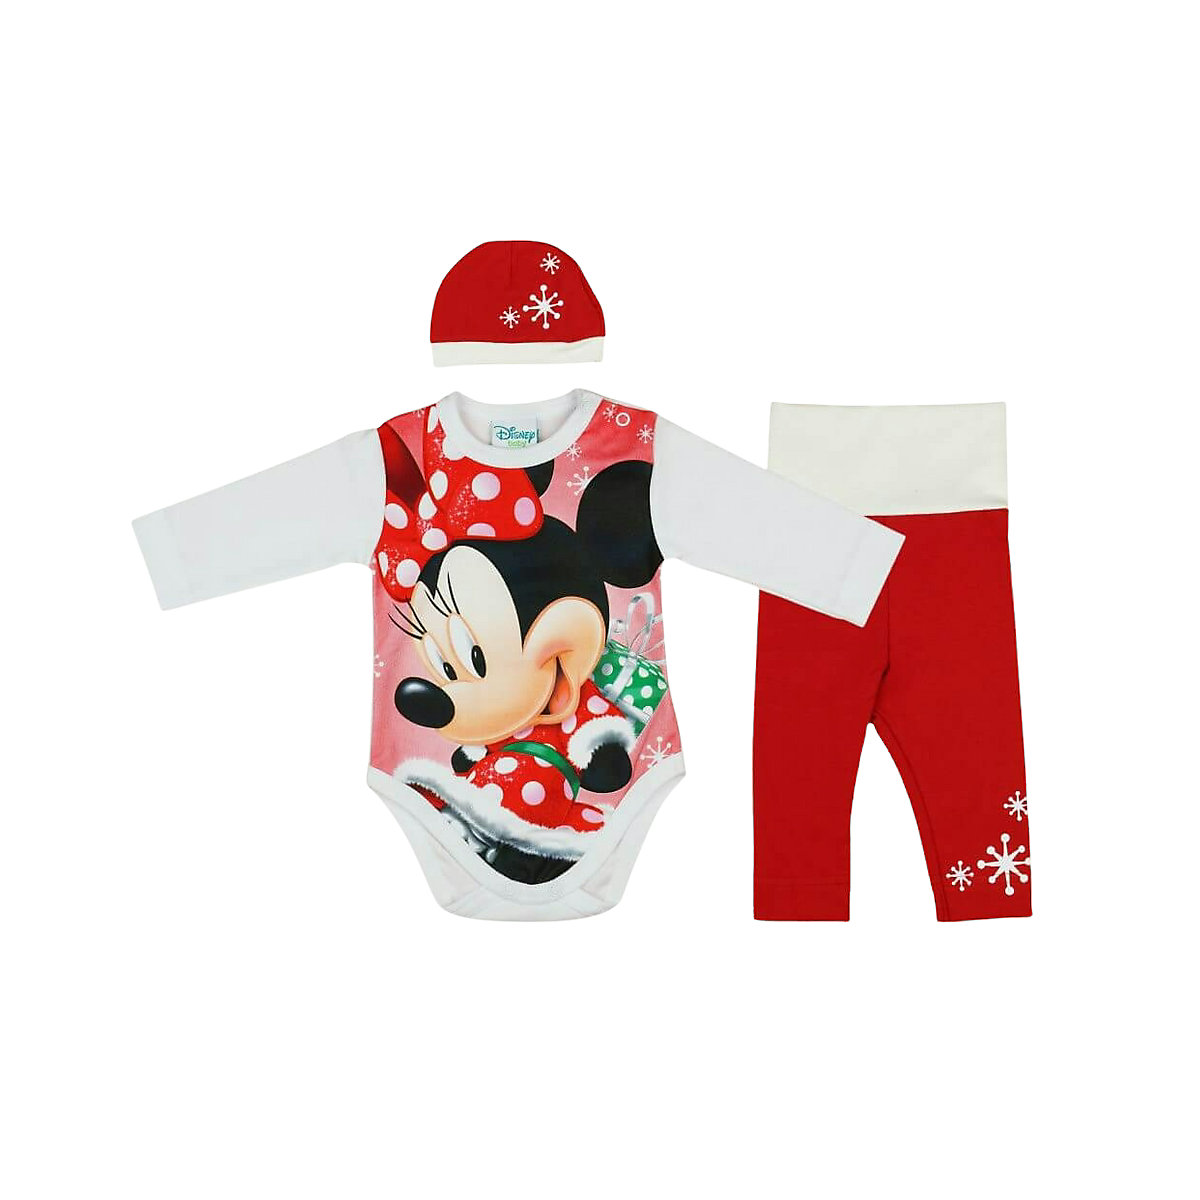 Babybogi Weihnachten Baby Body Set 3tlg Disney Minnie Mouse Festliche Outfit für Mädchen rot/weiß